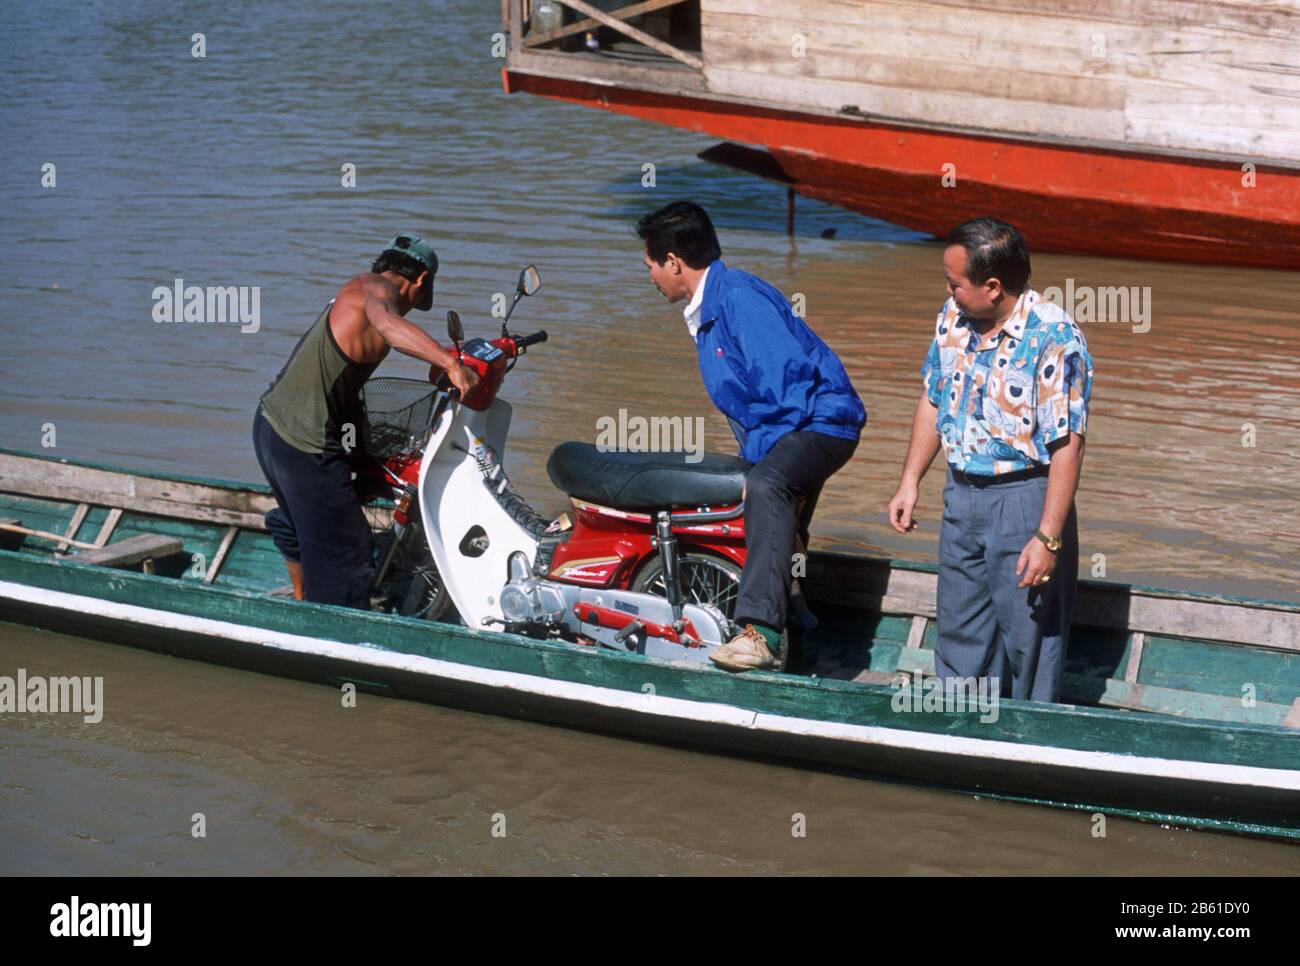 Tre uomini organizzano una moto in una piccola barca per imbarcarla attraverso il fiume Mekong a Luang Prabang, Laos, S.E. Asia. La città di Luang Prabang è patrimonio dell'umanità dell'UNESCO. Foto Stock